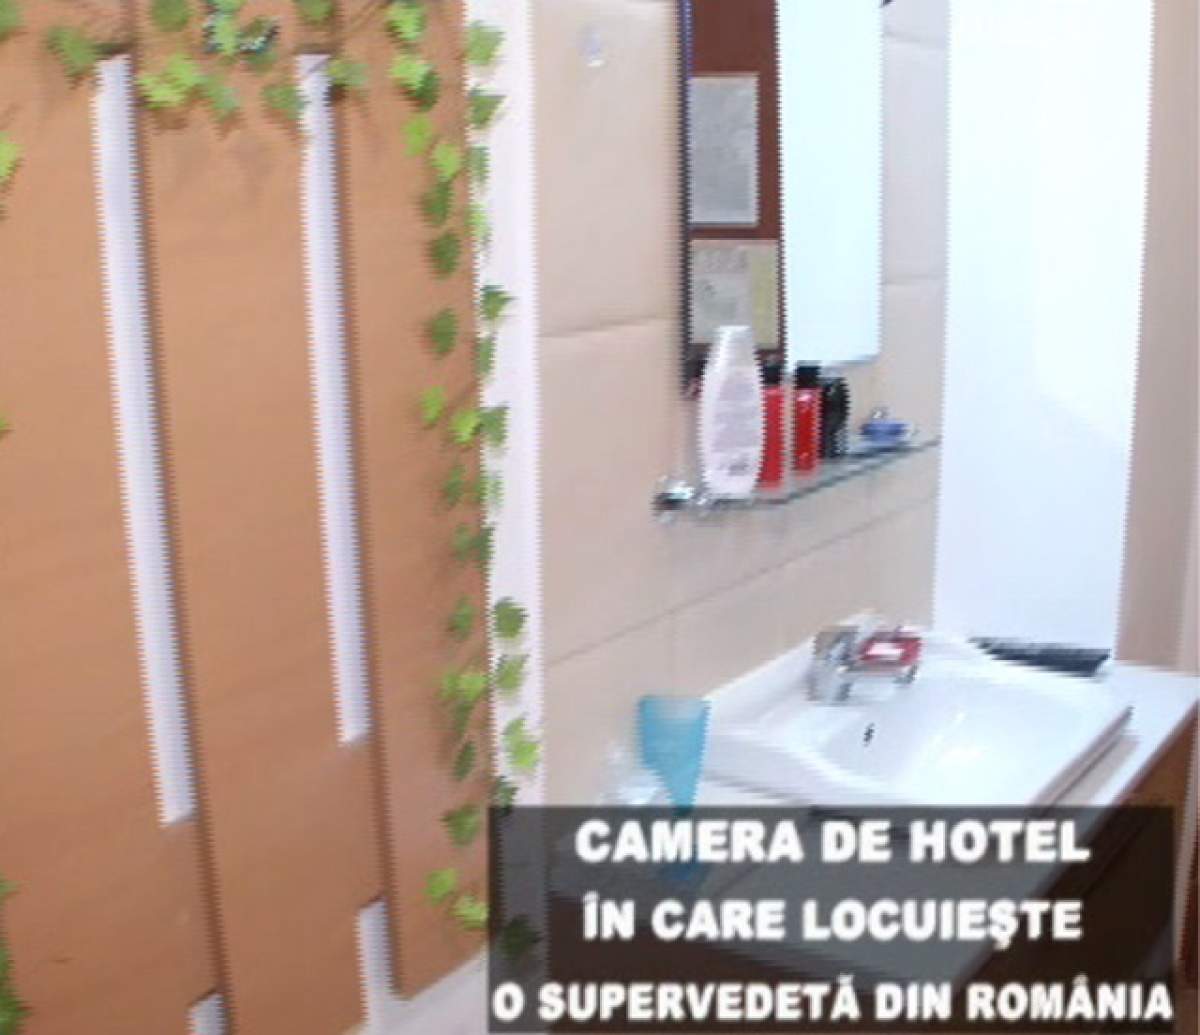 Mănâncă acolo unde doarme şi se spală! O supervedetă din România trăieşte într-o cameră de hotel